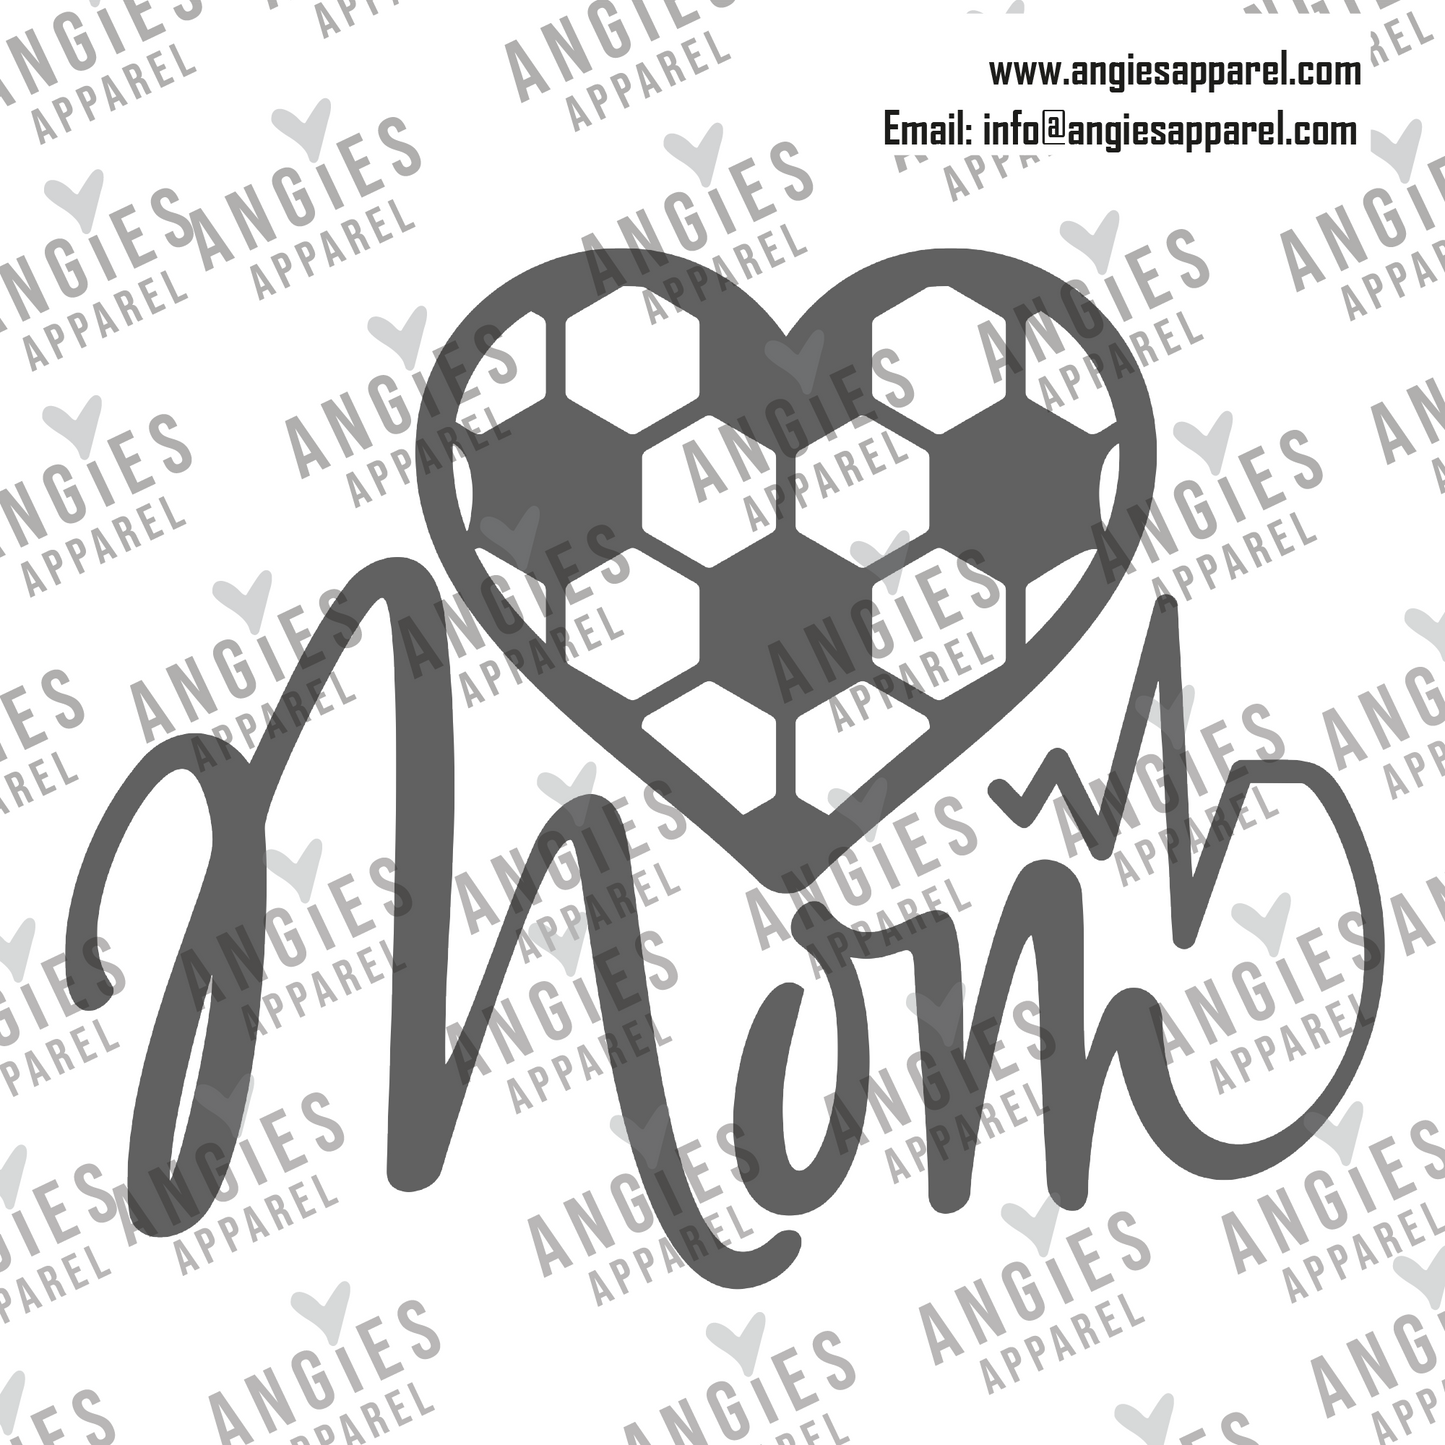 19. Soccer - Soccer Mom 3 - Ready to Press